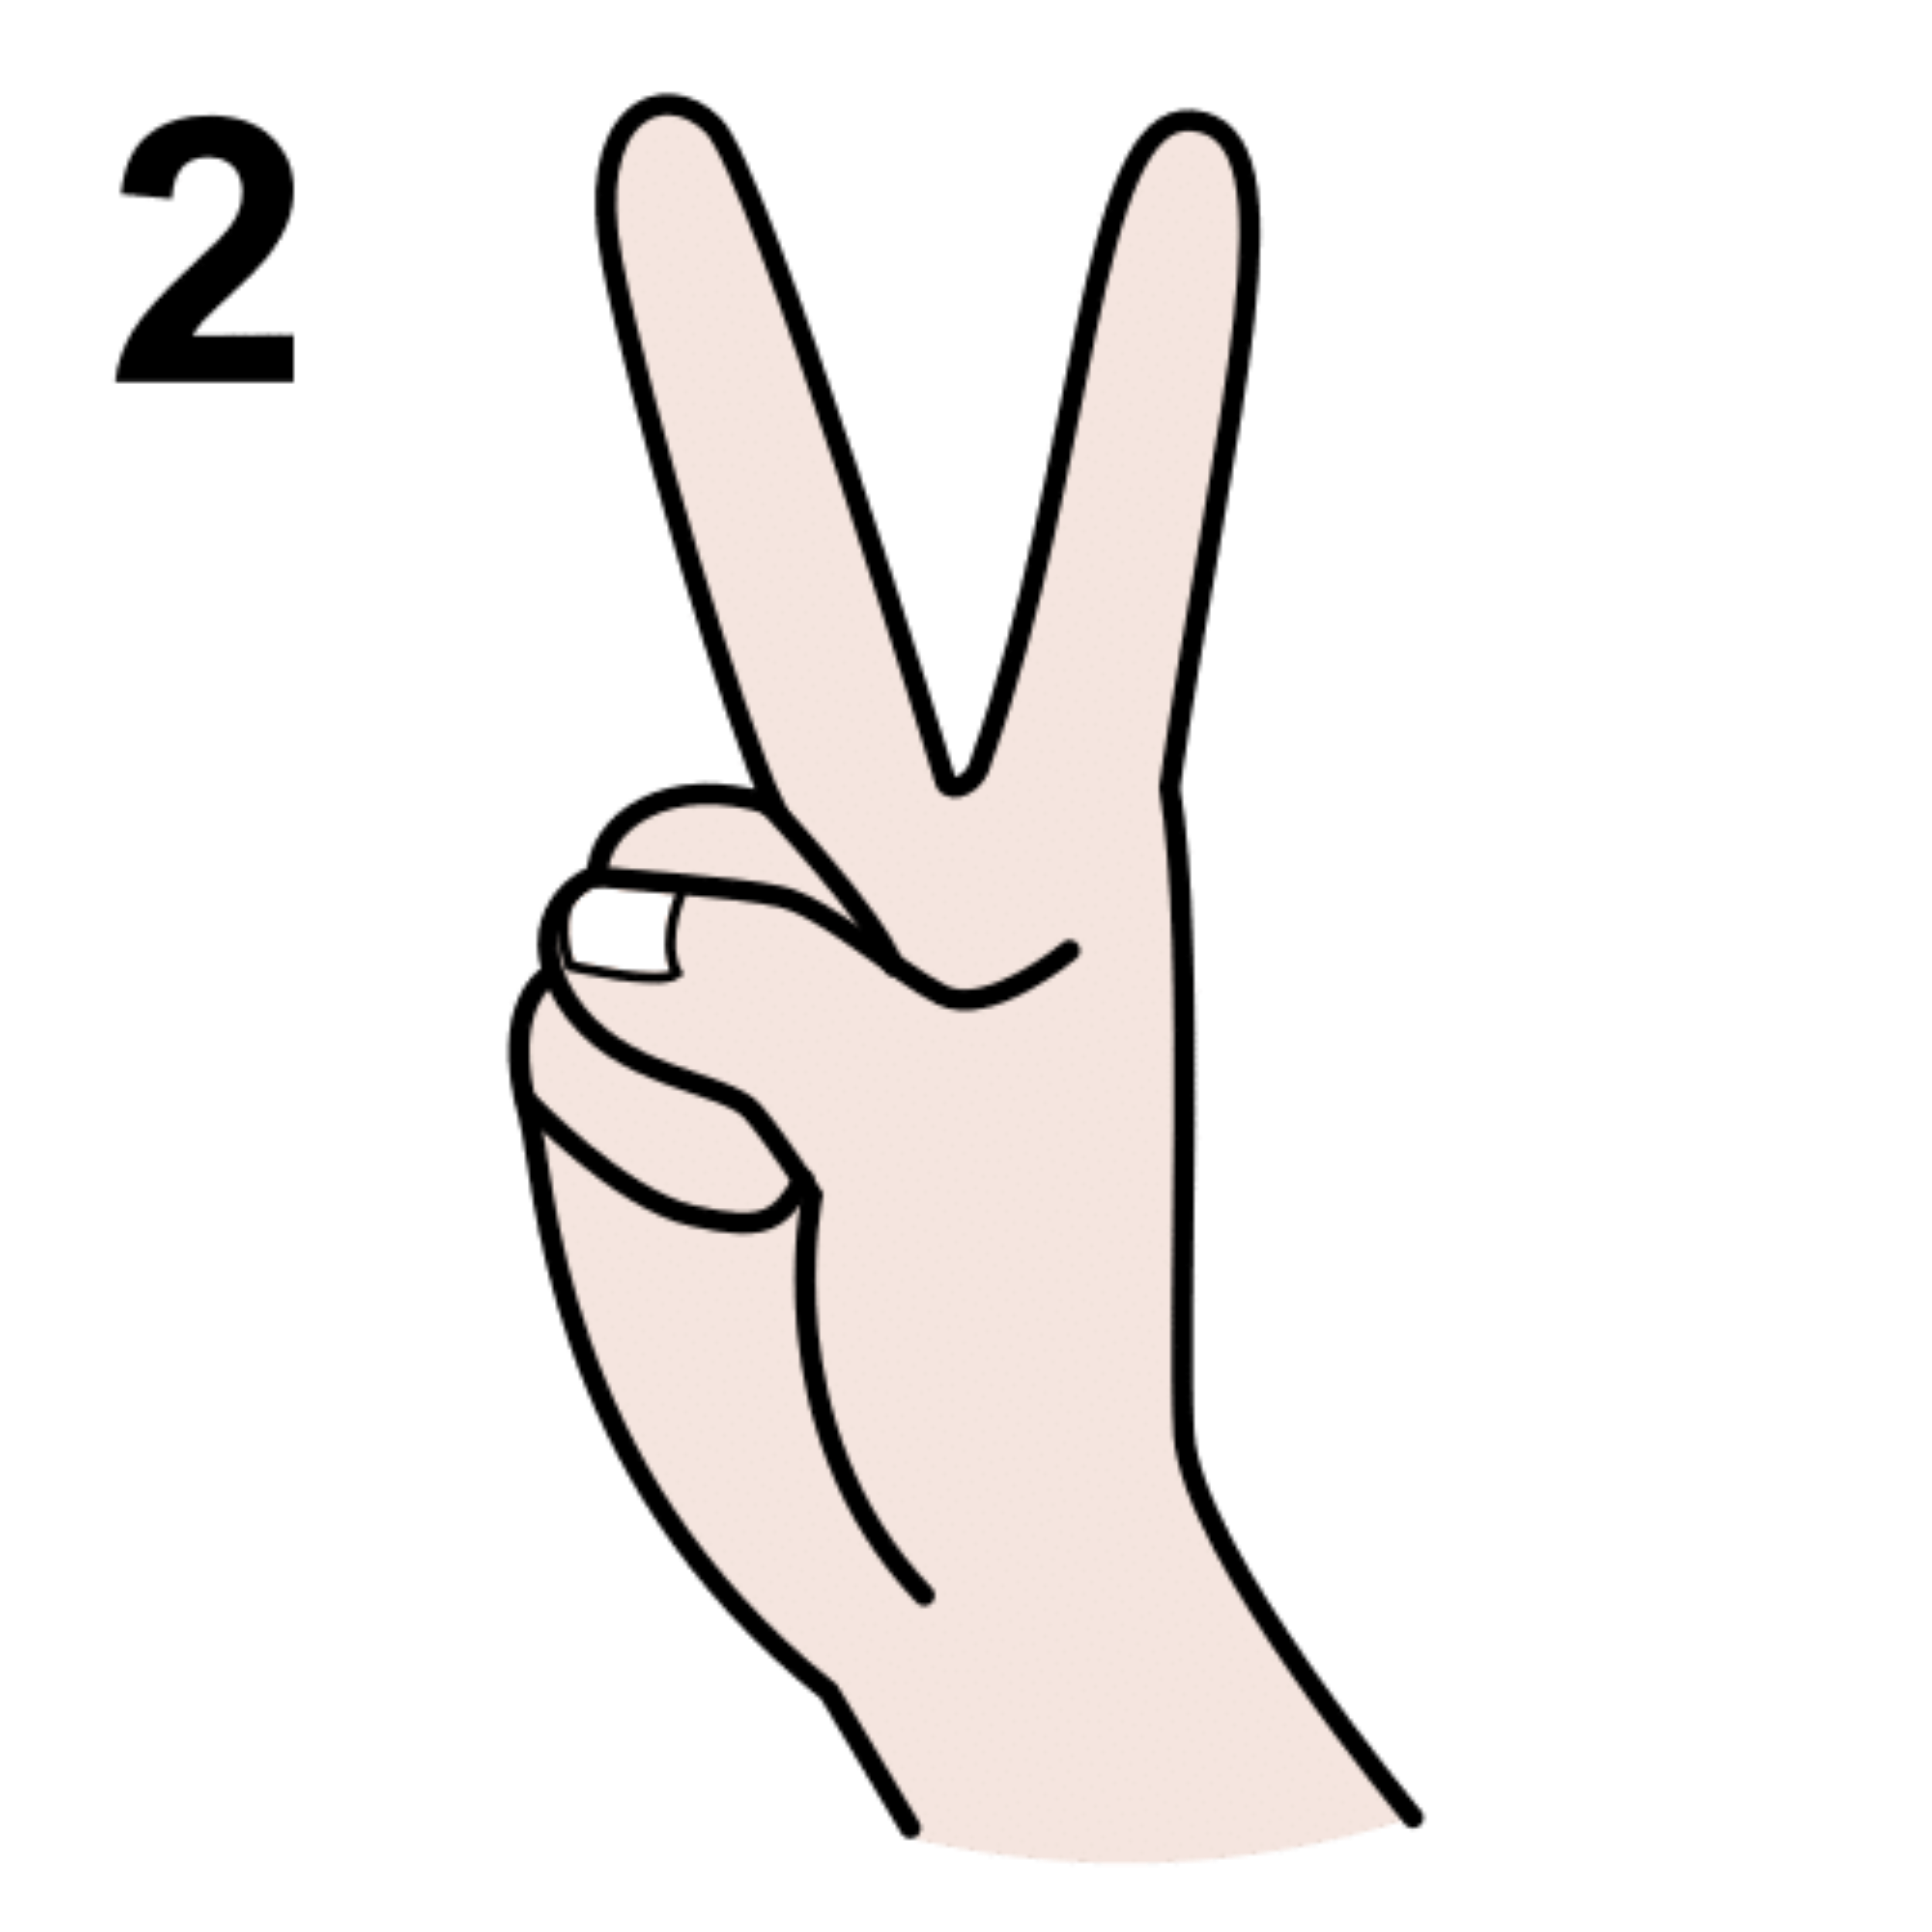 Imagen de una mano con dos dedos sacados, el índice y el corazón.